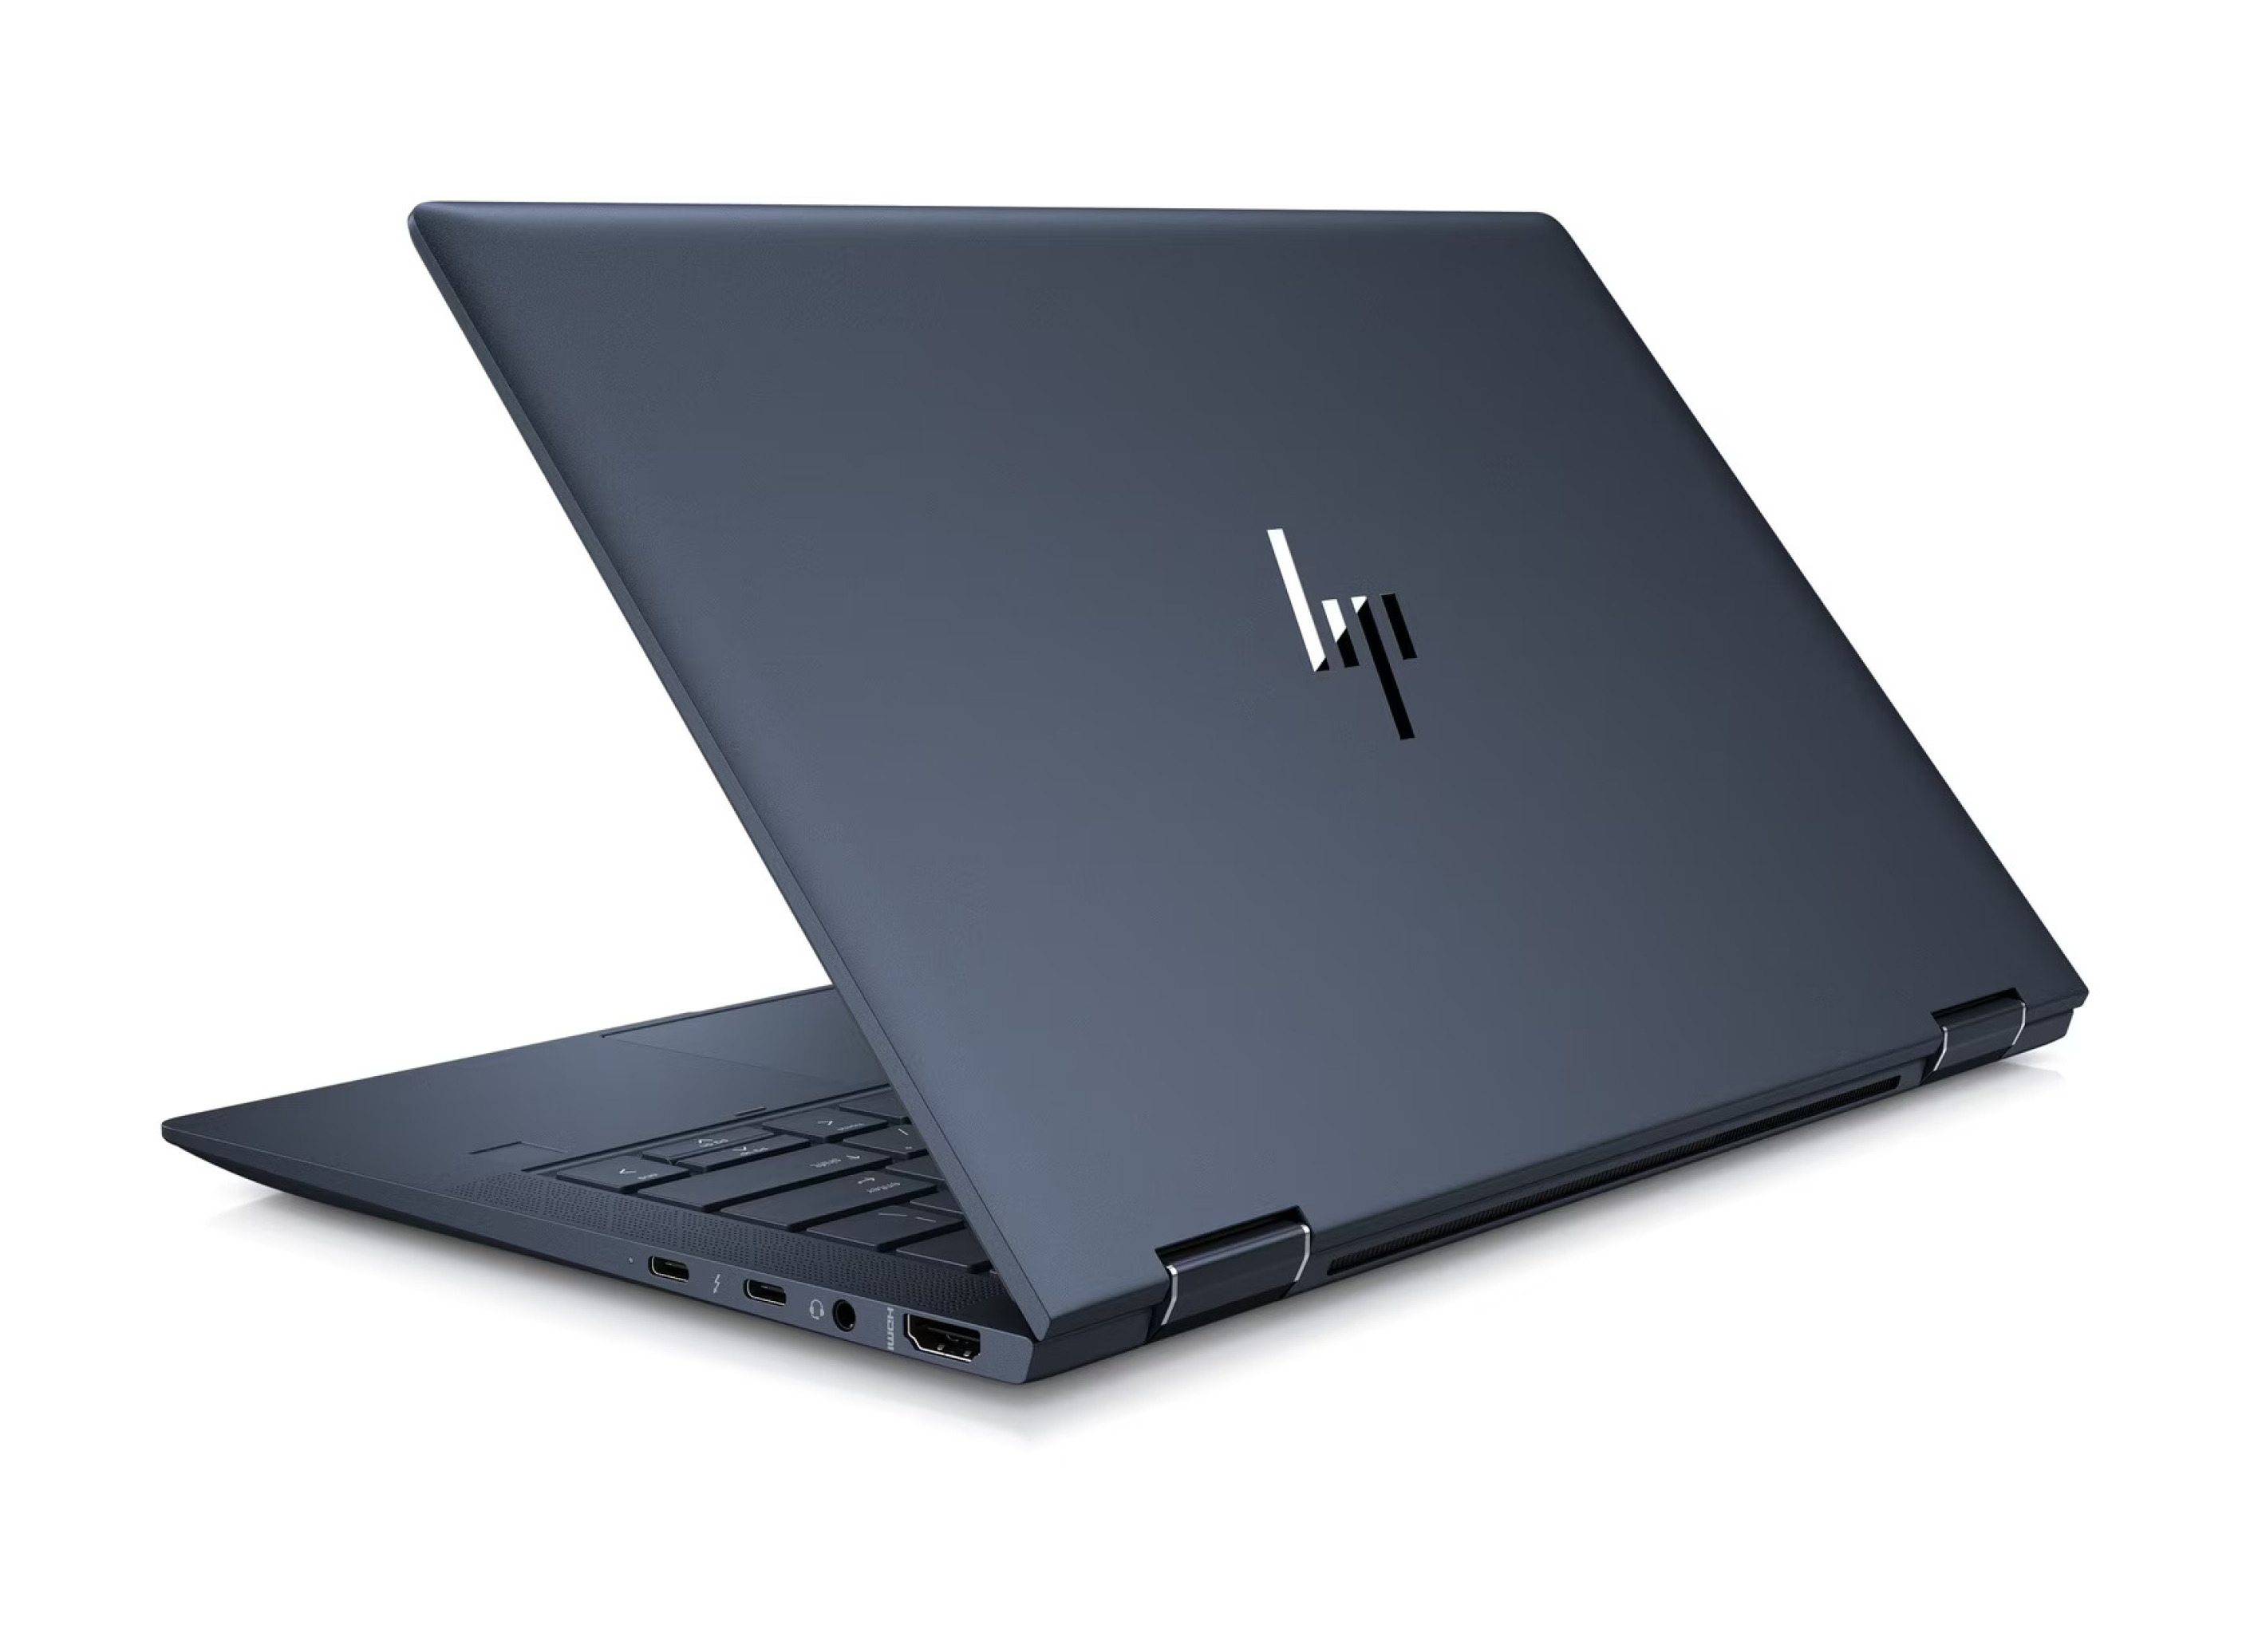  خرید و قیمت لپ تاپ HP Elite DragonFly G2 X360 Touch | لاکچری لپ تاپ 